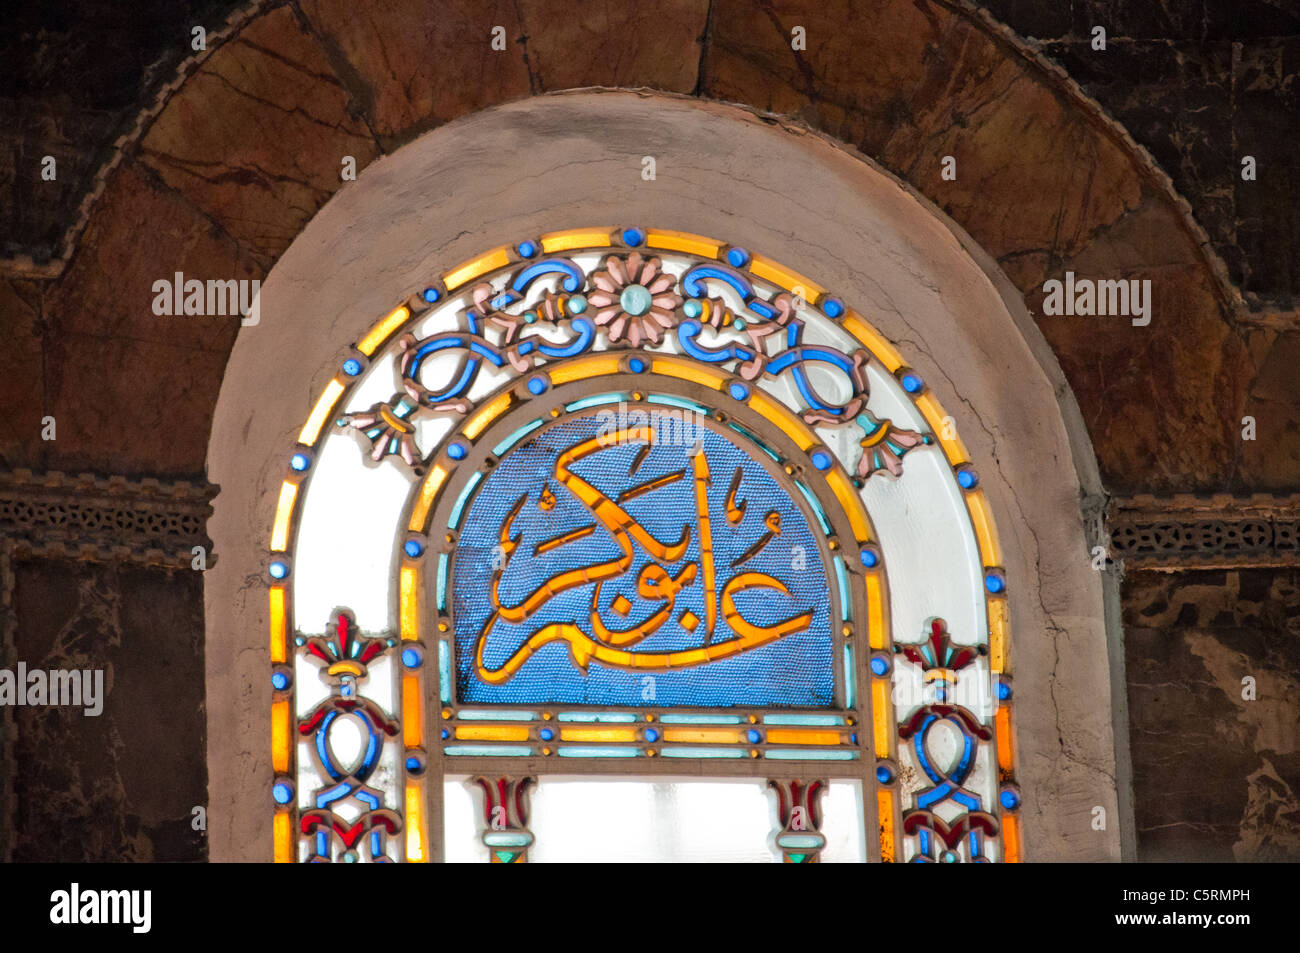 Vitrail à l'écriture arabe, l'Ayasofya (Hagia Sophia) cathédrale et mosquée, Istanbul, Turquie Banque D'Images